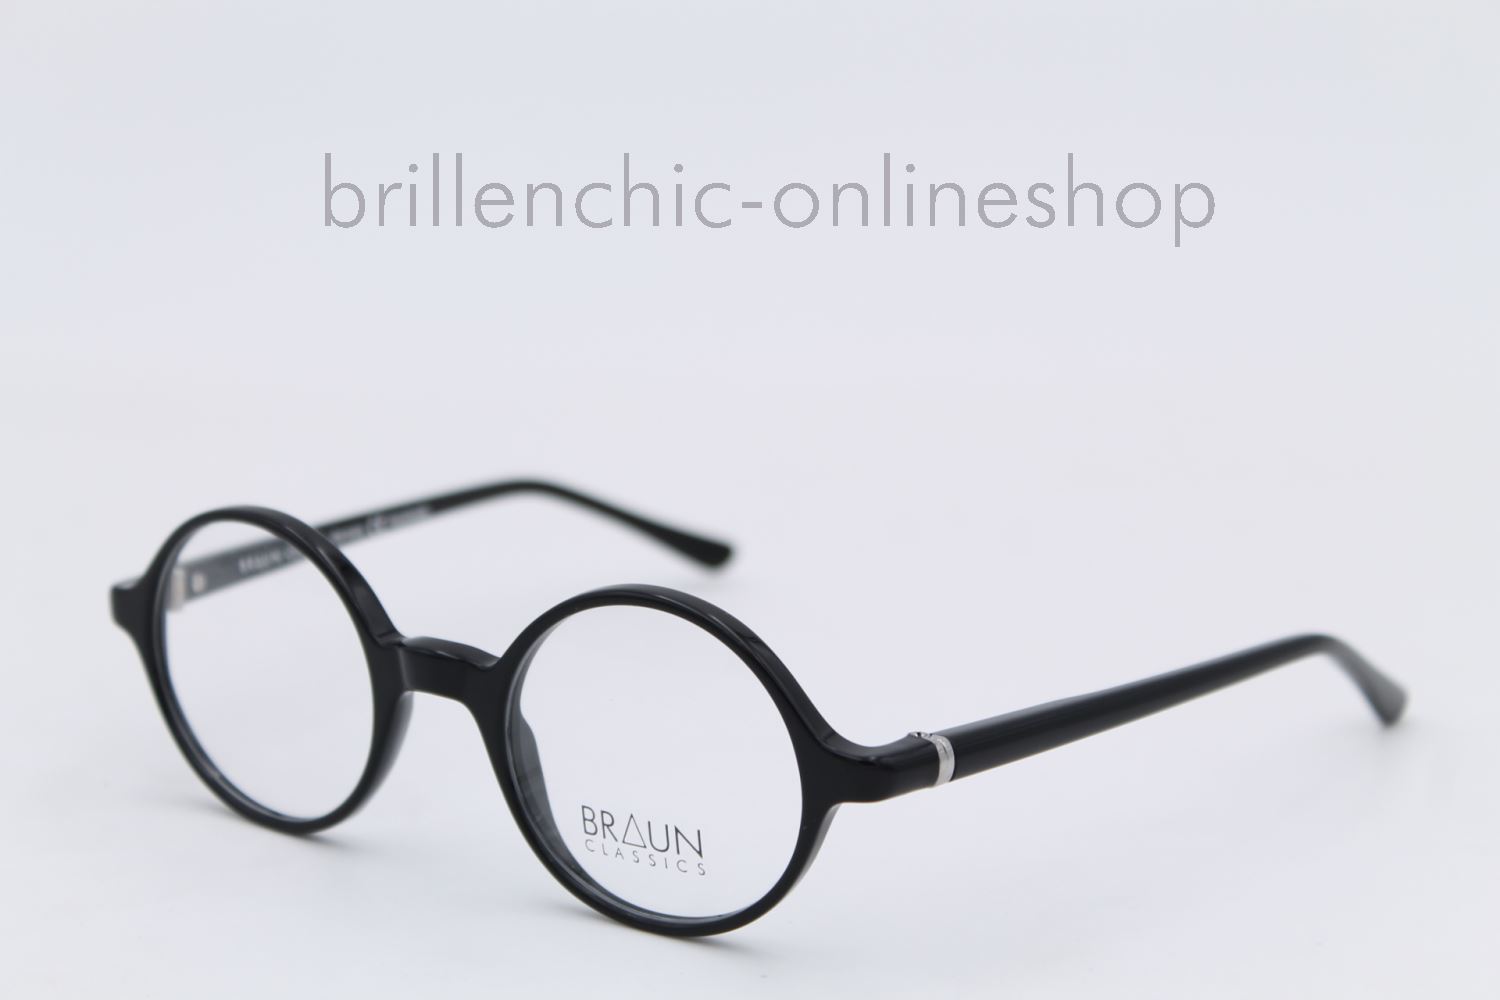 Brillenchic Onlineshop Berlin Ihr Starker Partner Fur Exklusive Brillen Online Kaufen Braun Classics Mod 54 4 Exklusiv Im Brillenchic Onlineshop